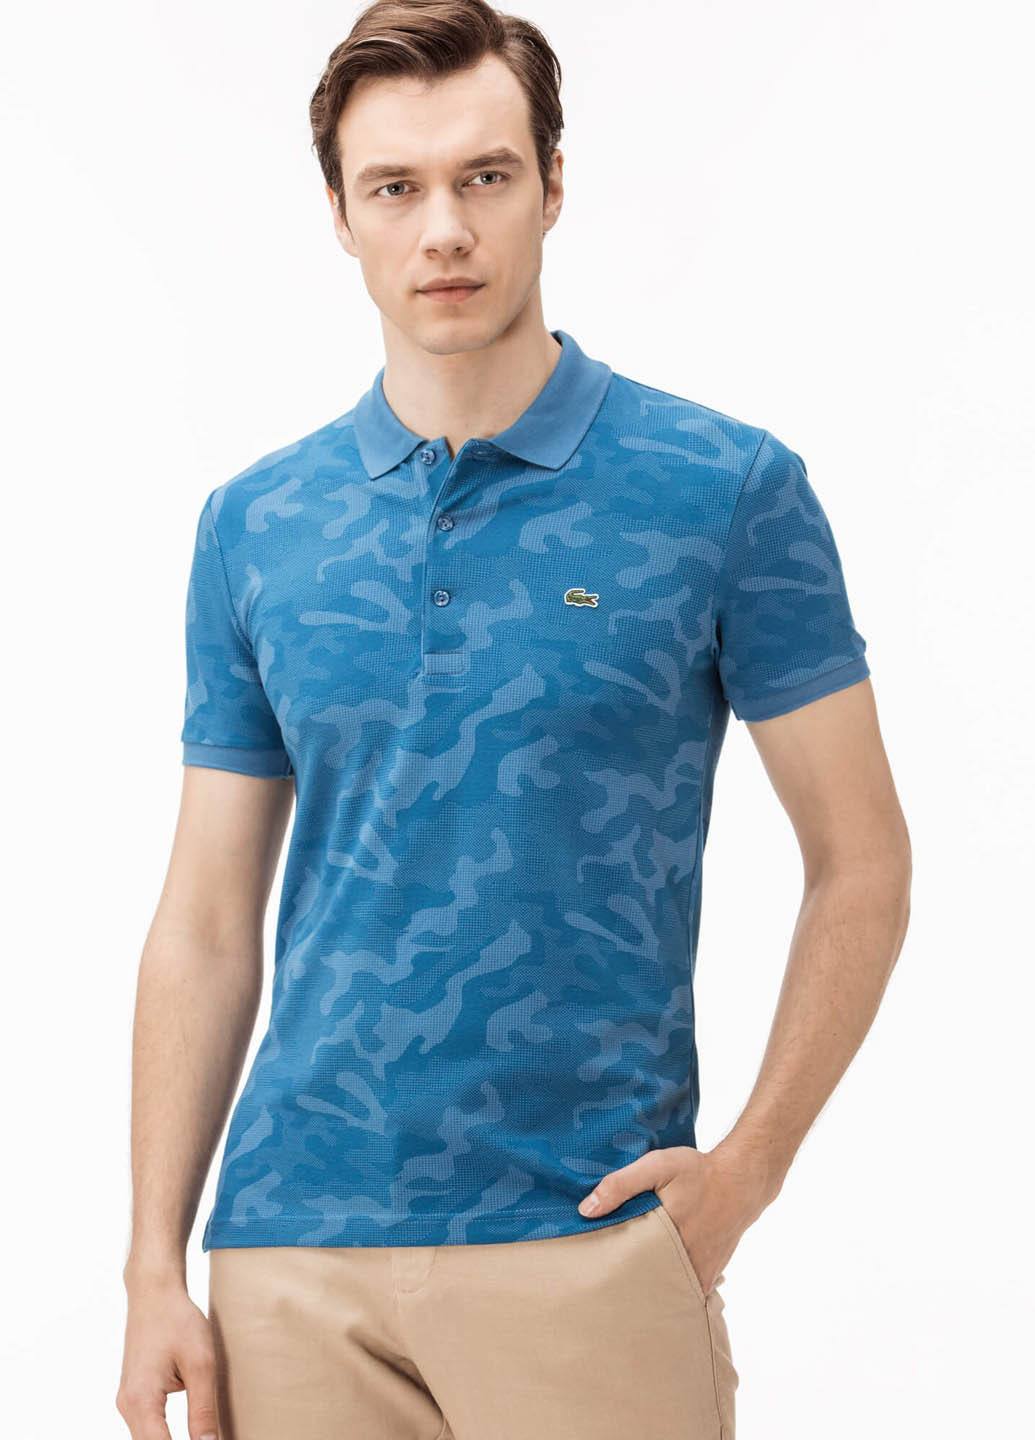 Темно-голубой футболка-поло для мужчин Lacoste с камуфляжным принтом